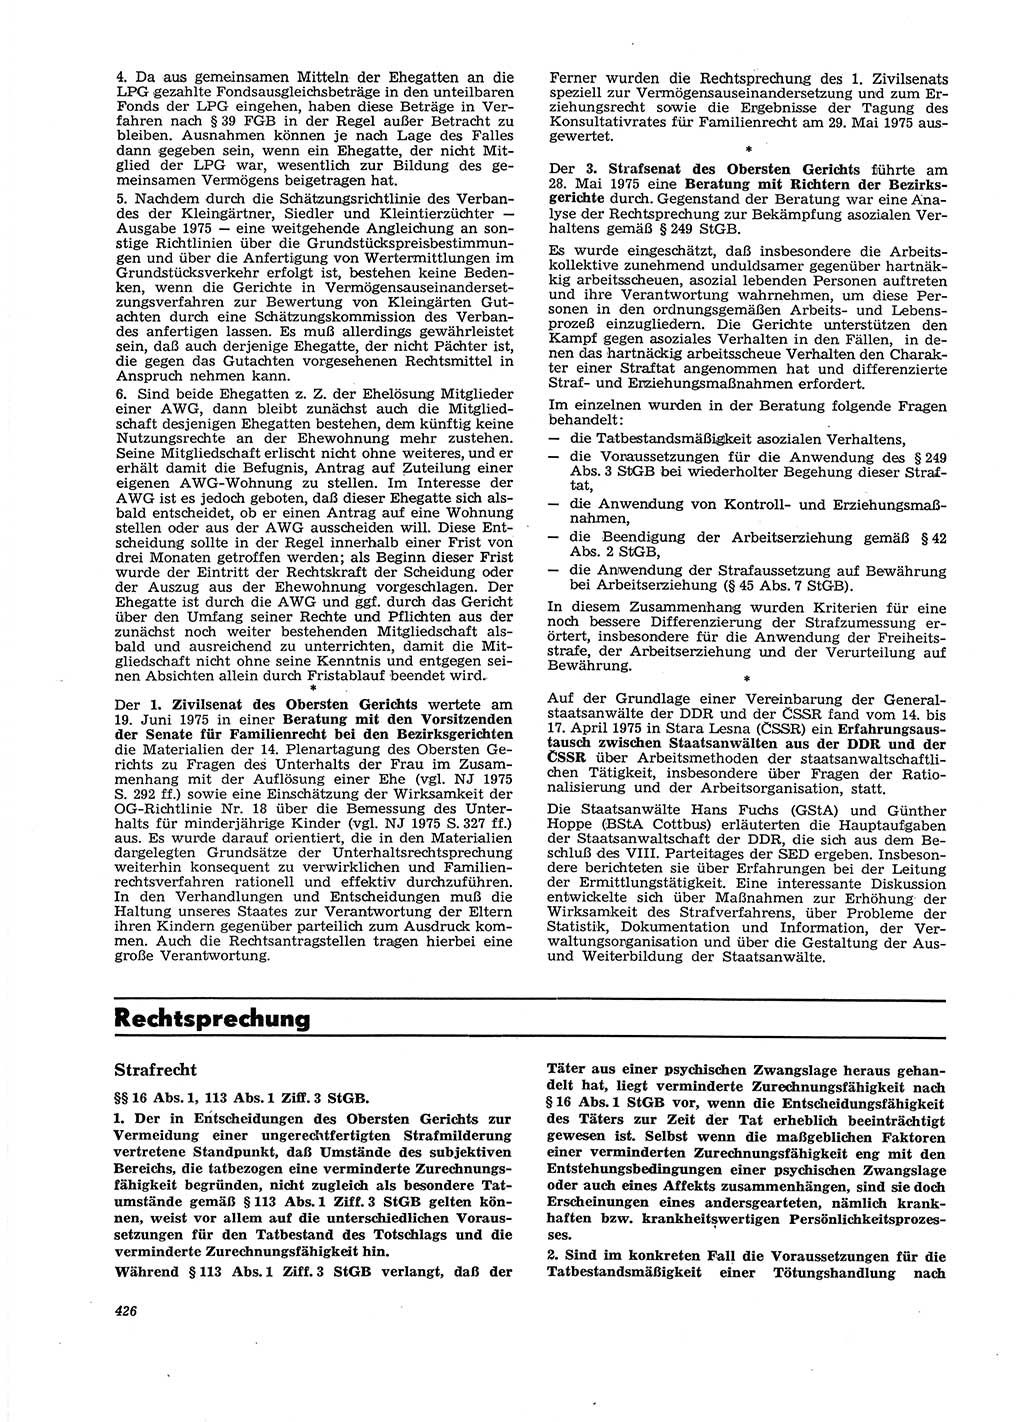 Neue Justiz (NJ), Zeitschrift für Recht und Rechtswissenschaft [Deutsche Demokratische Republik (DDR)], 29. Jahrgang 1975, Seite 426 (NJ DDR 1975, S. 426)